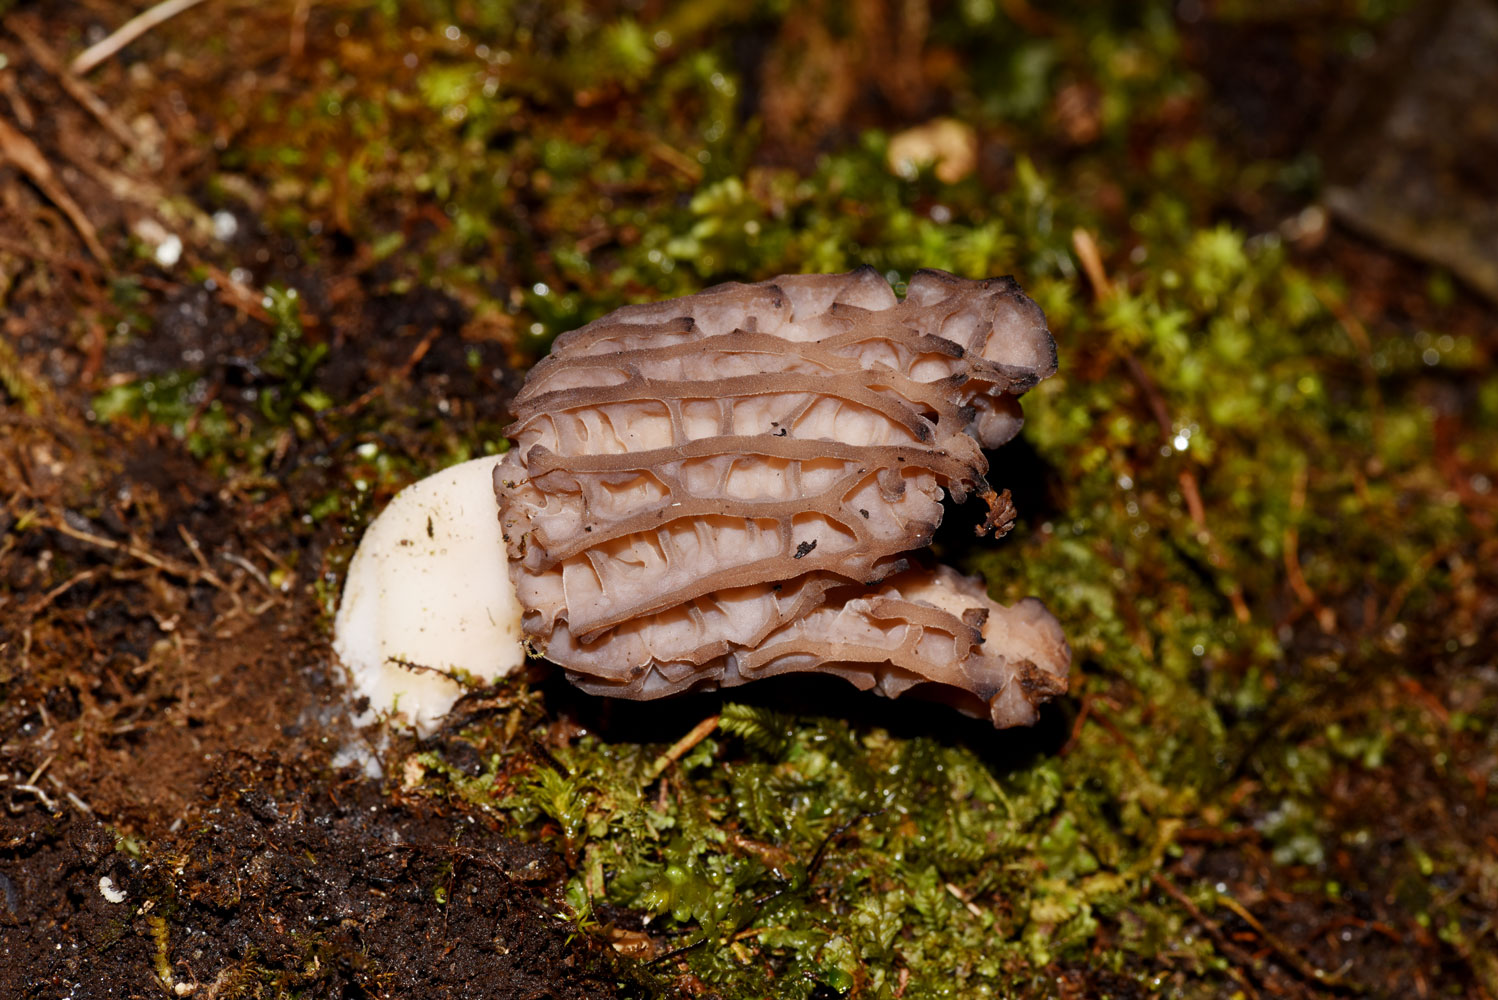 Colmenilla (Morchella esculenta)